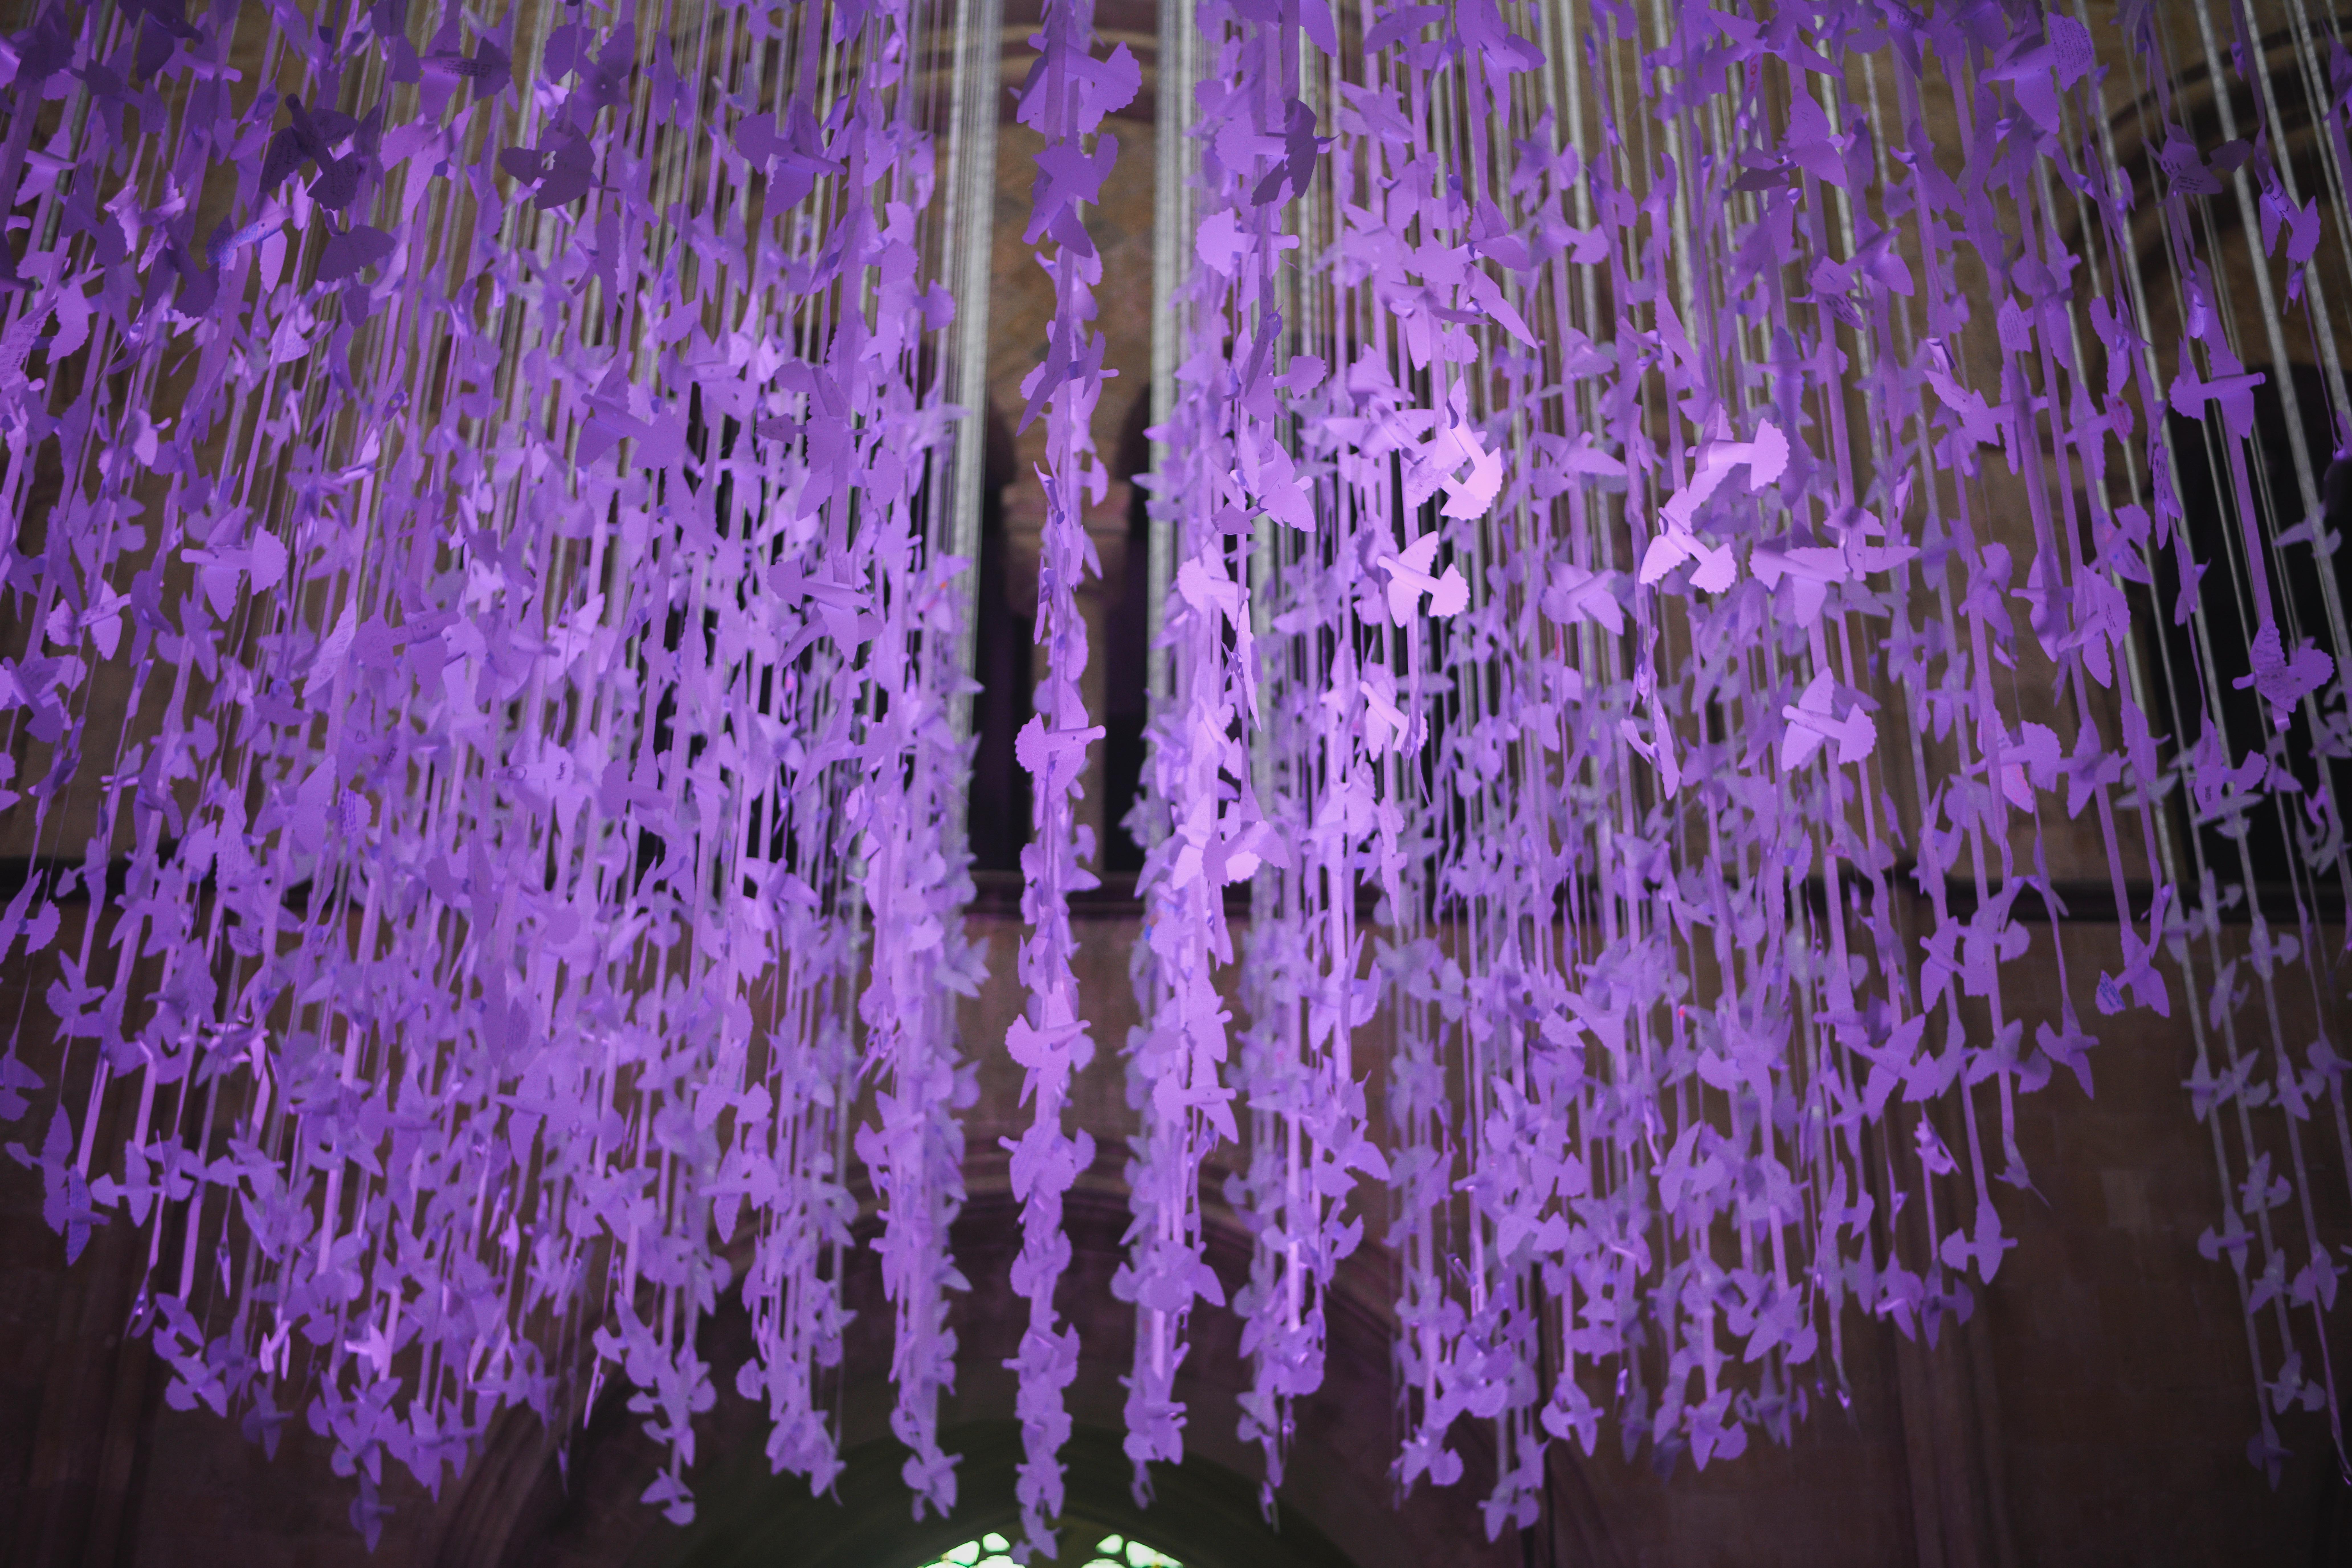 Peace Doves up close, illuminated purple